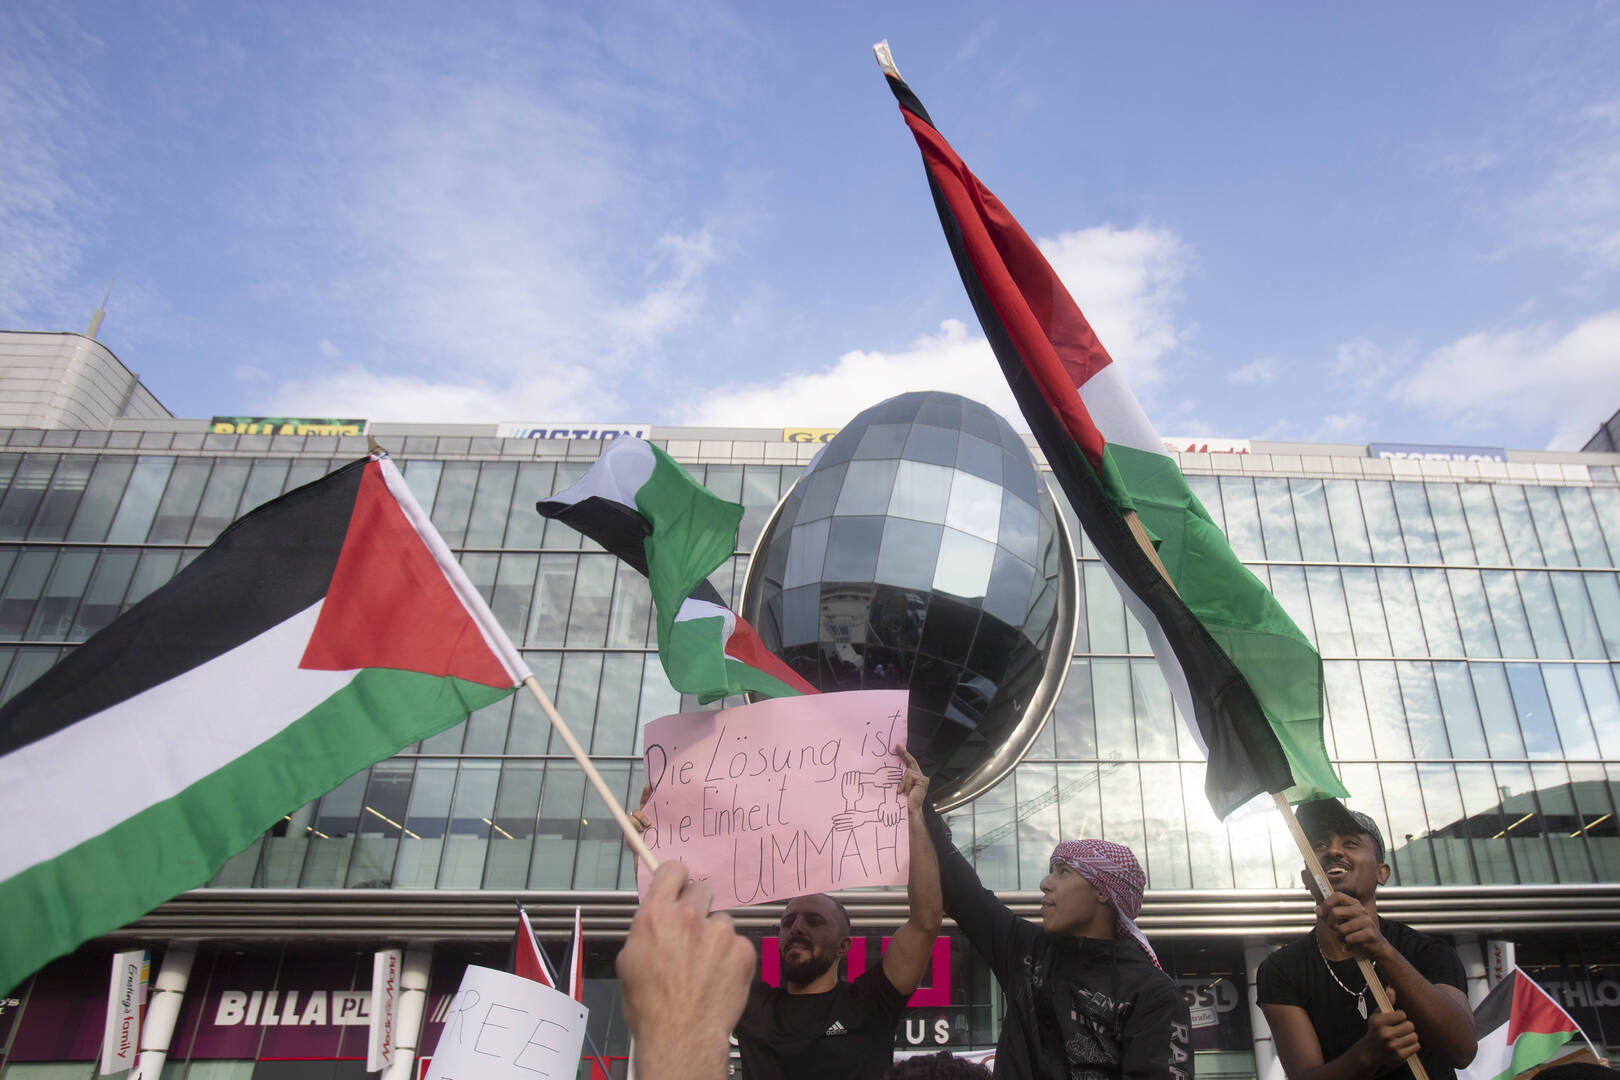 مسيرة احتجاجية حاشدة مؤيدة لفلسطين وسط لندن (فيديو)